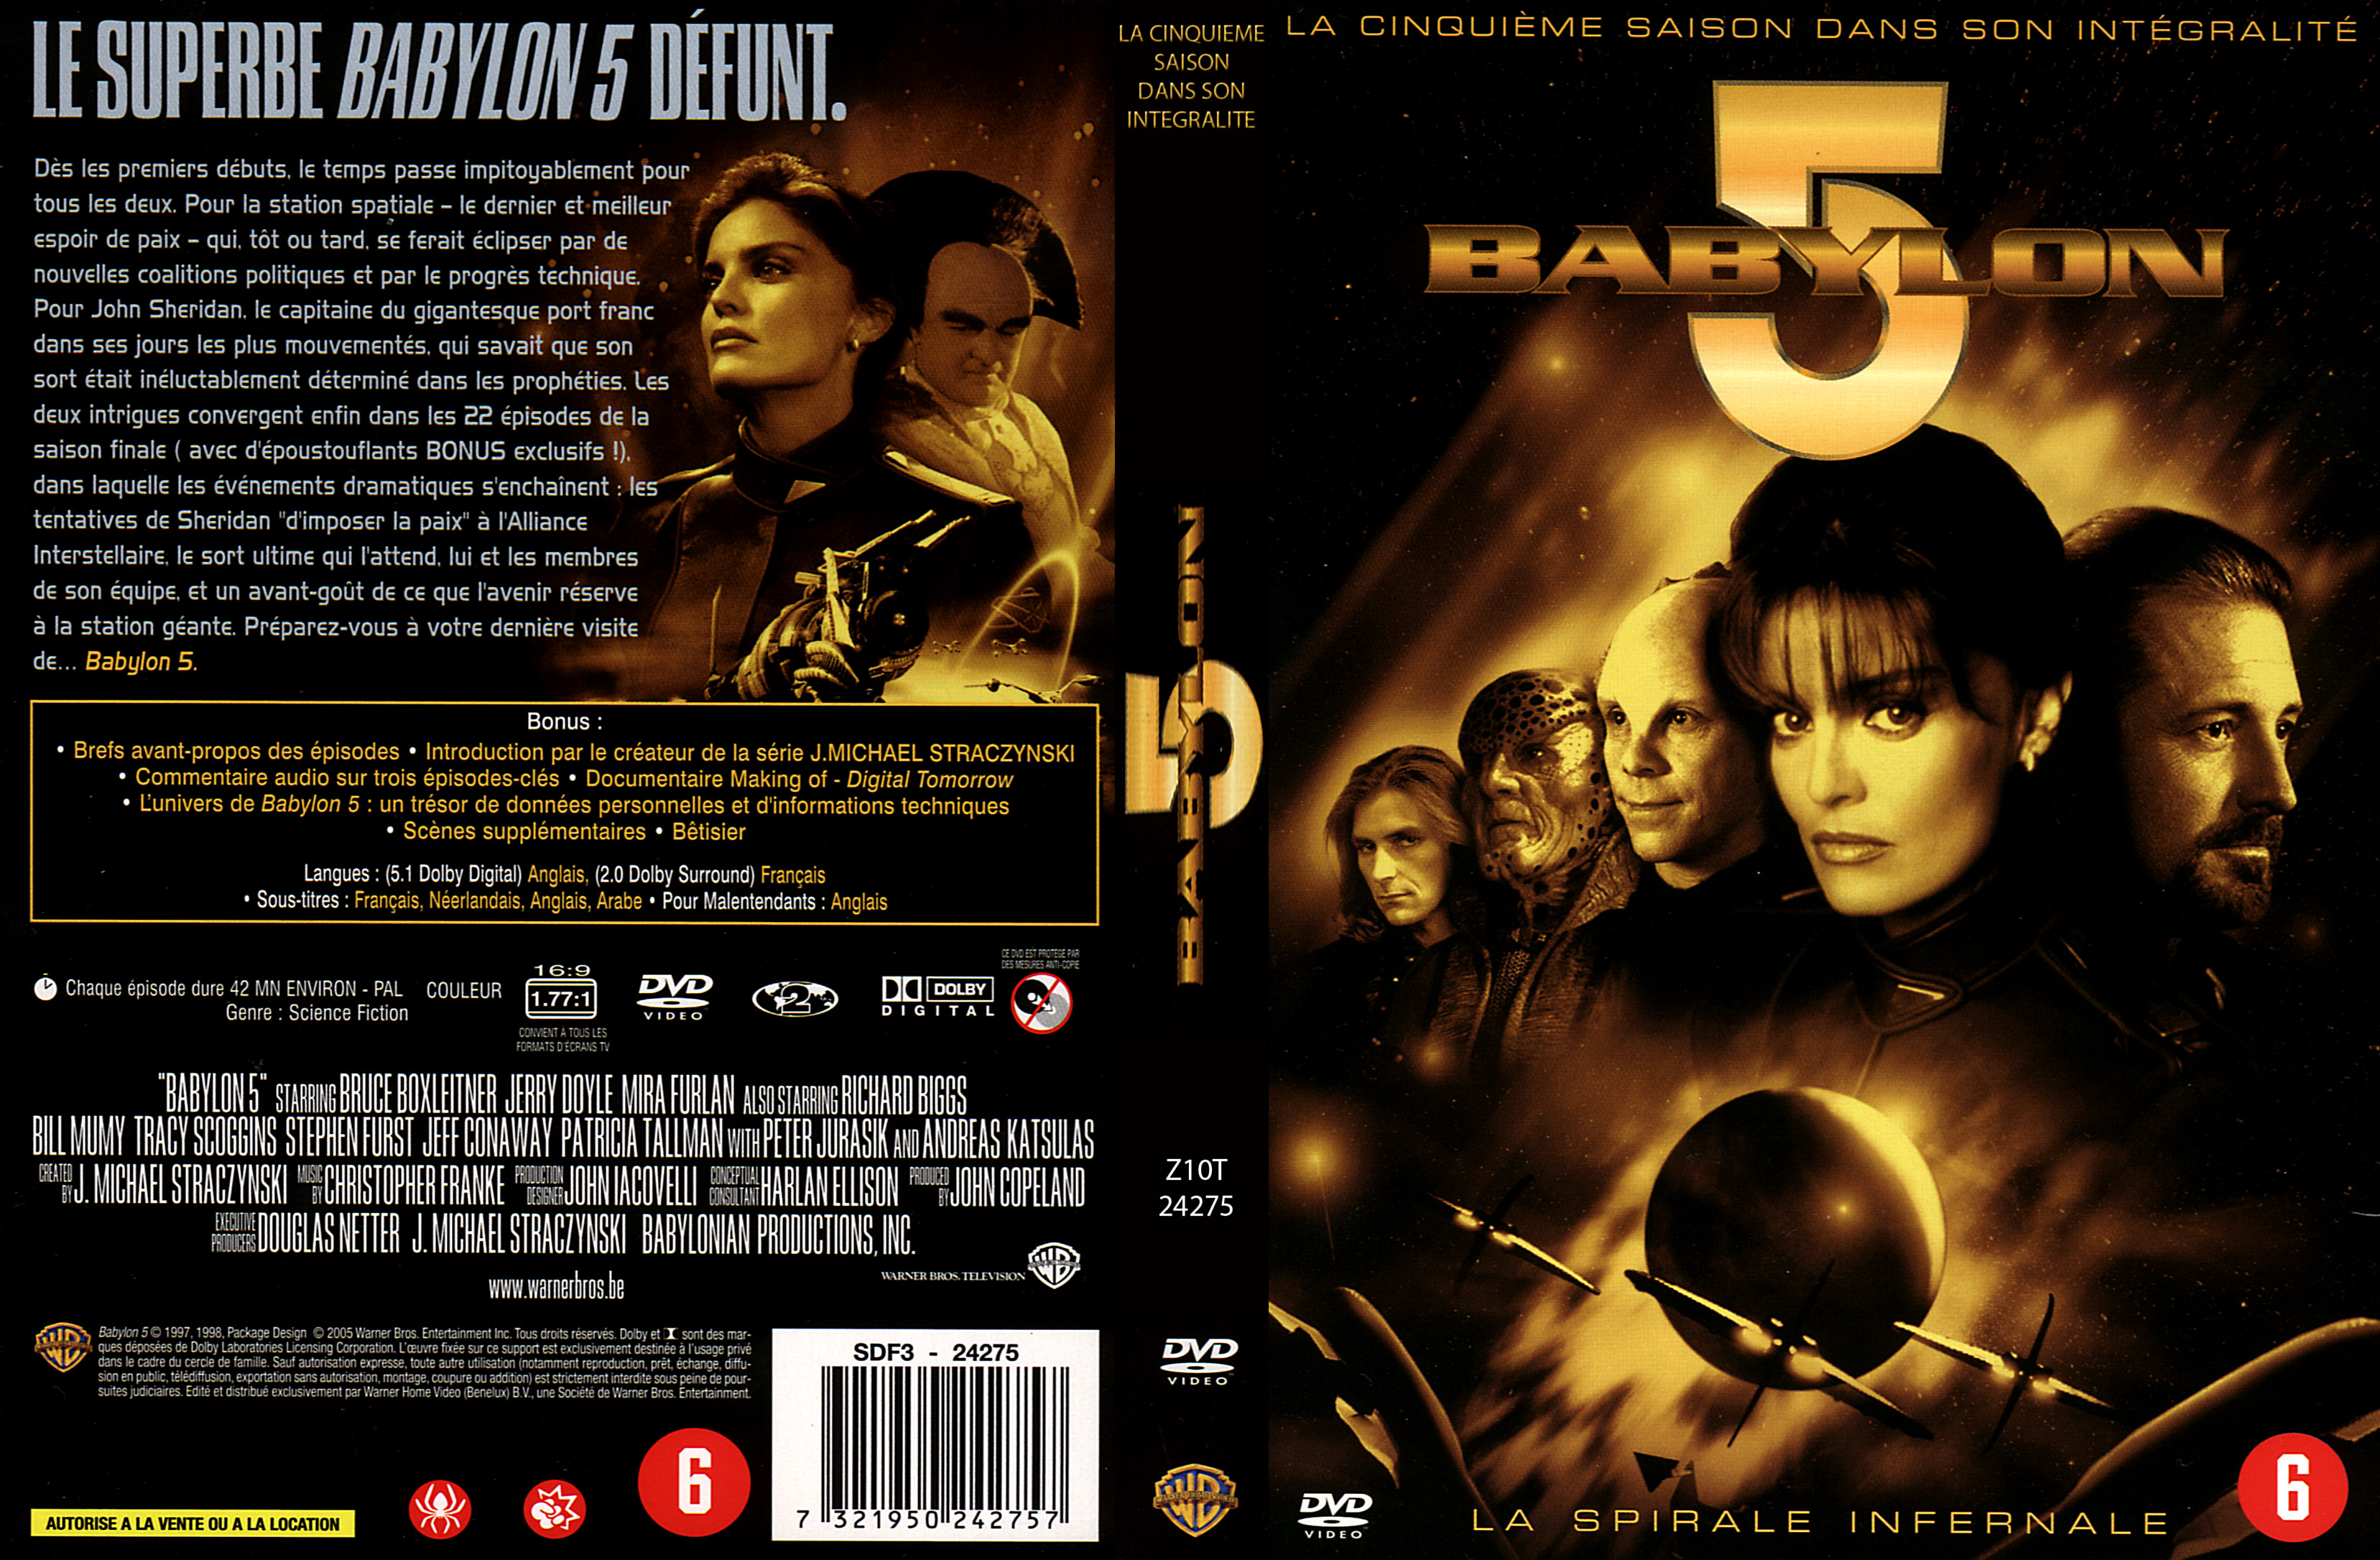 Jaquette DVD Babylon 5 Saison 5 COFFRET